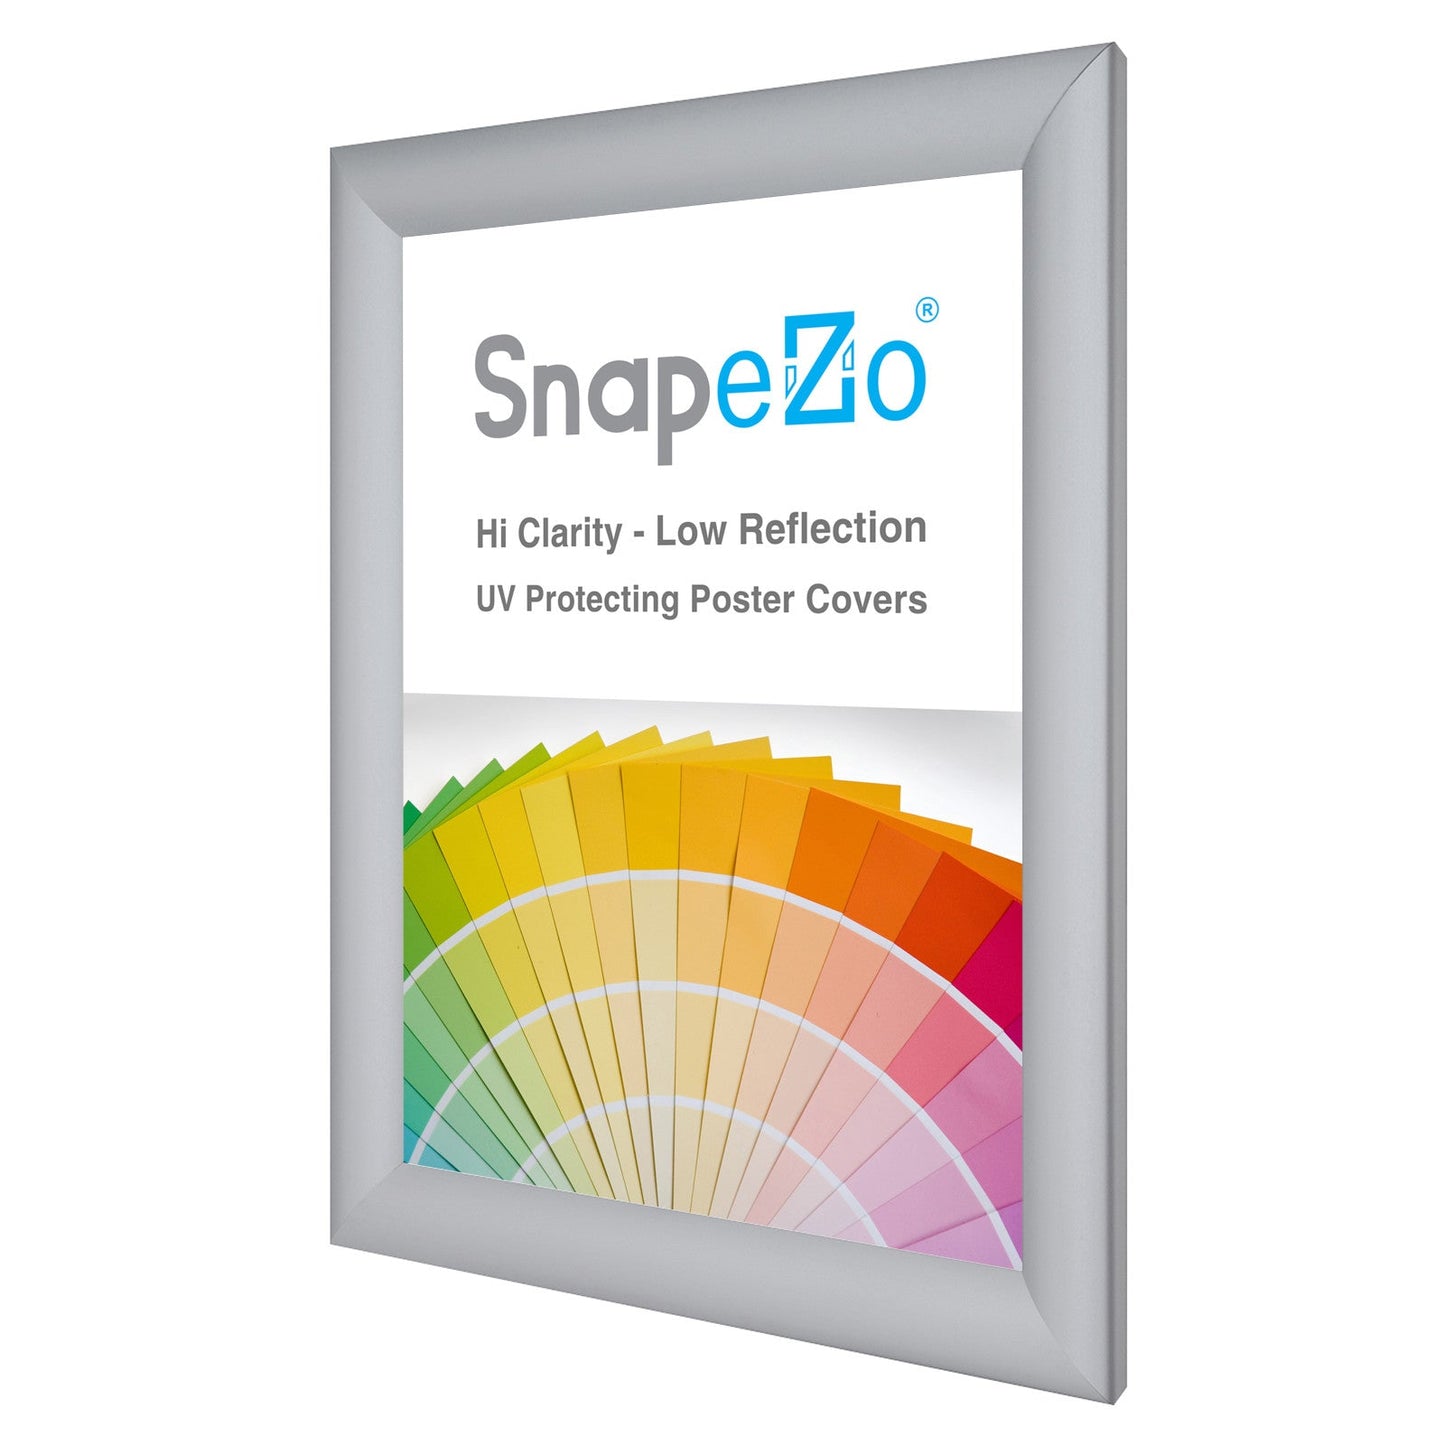 A4 Silver SnapeZo® Snap Frame - 1.2" Profile